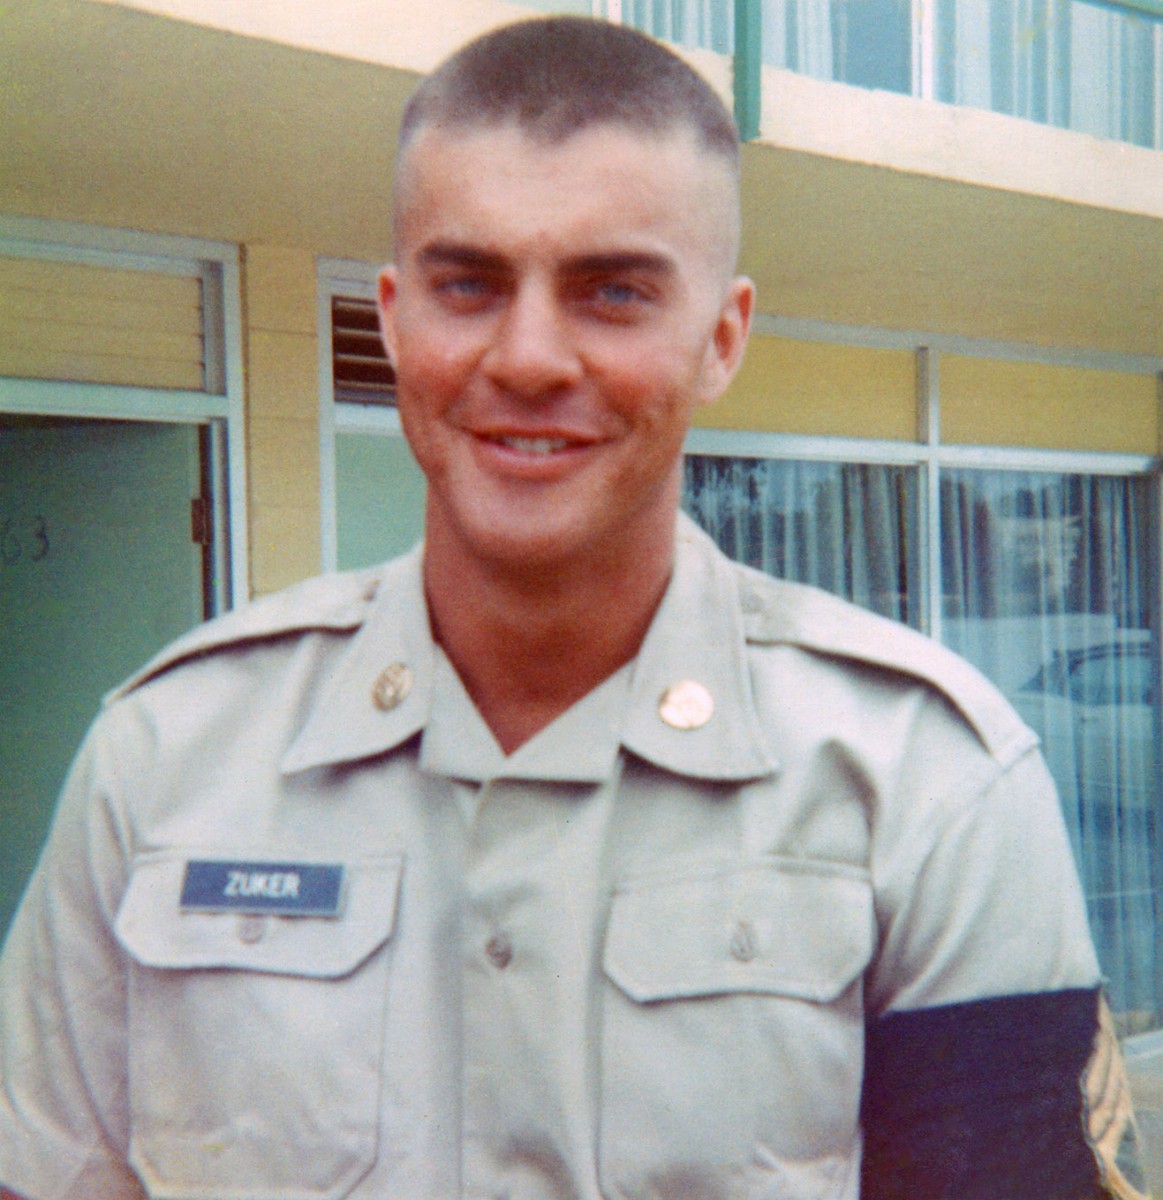 Pvt. Zuker during basic training in 1968